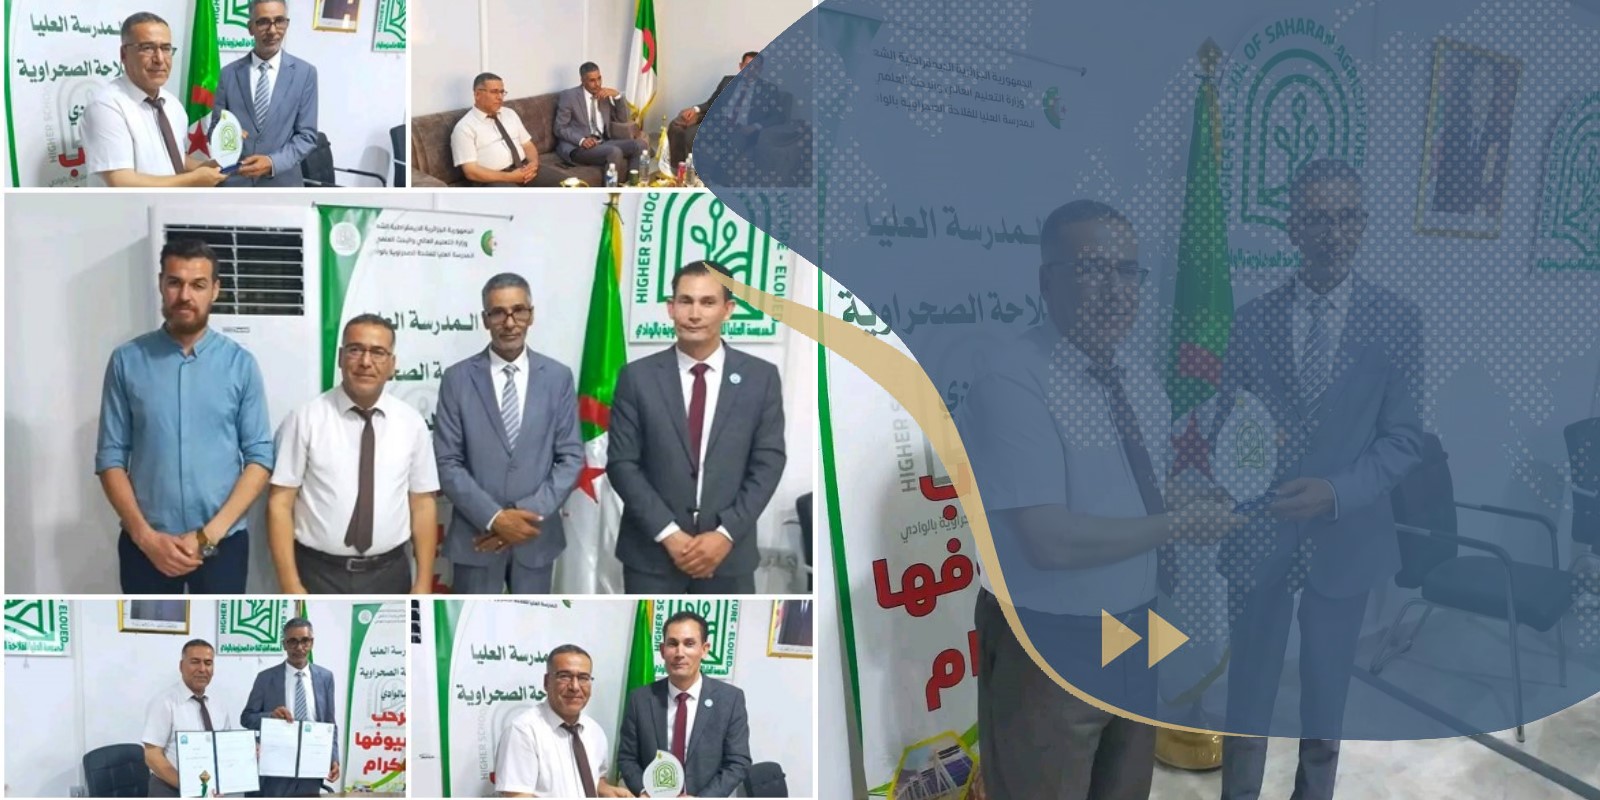 اتفاقية تعاون بين جامعة سرت والمدرسة العليا للفلاحة بالوادي بالجزائر